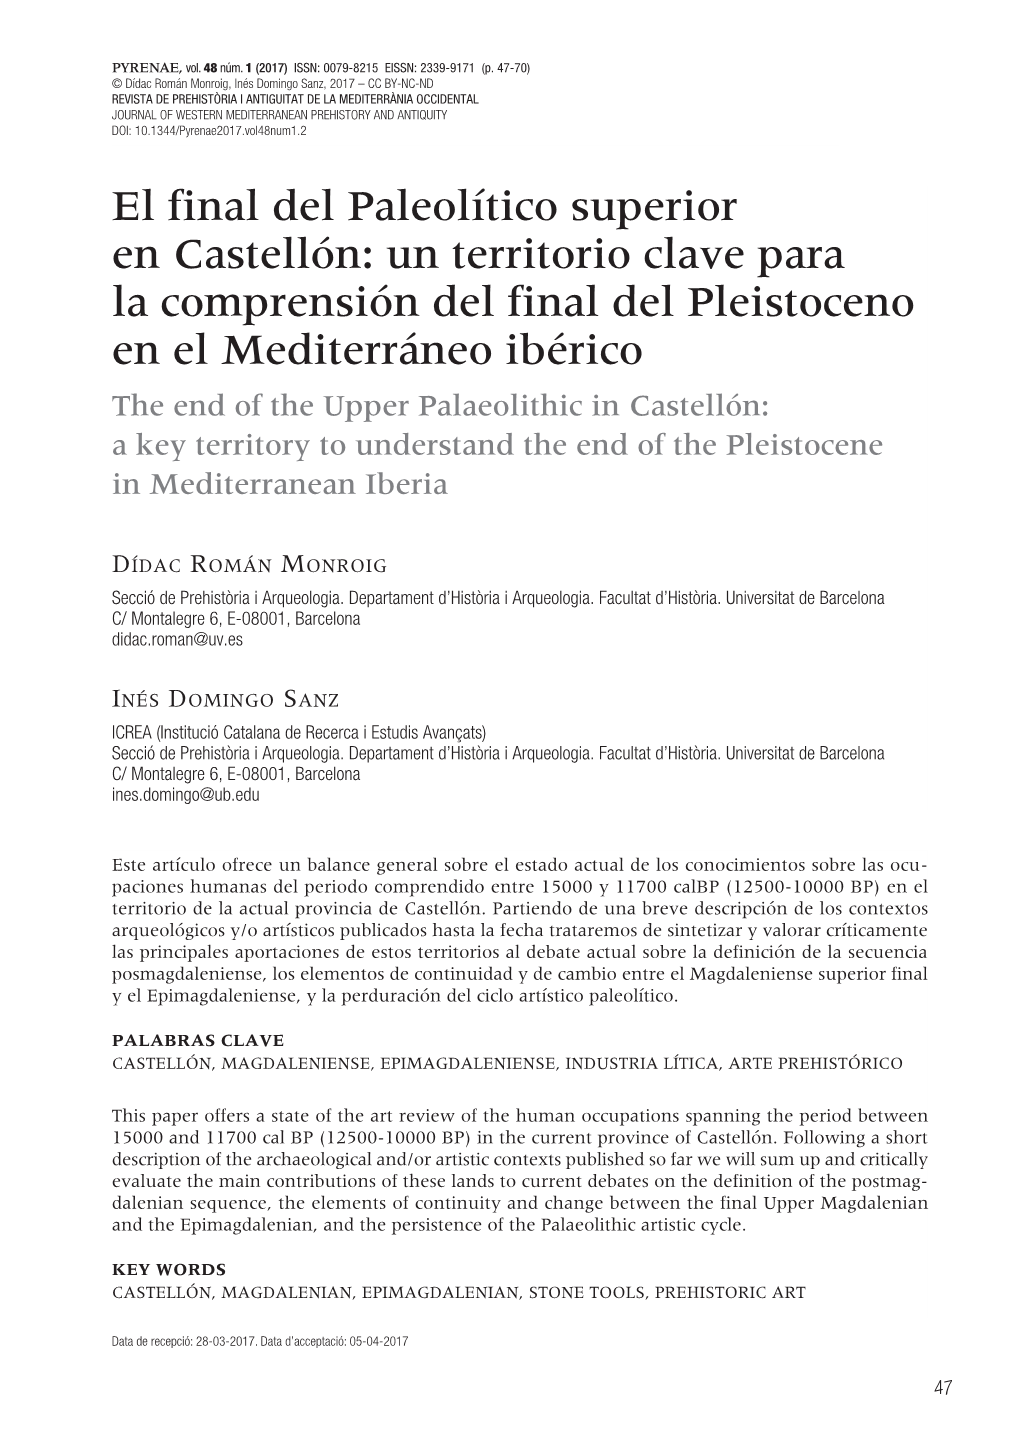 El Final Del Paleolítico Superior En Castellón: Un Territorio Clave Para La Comprensión Del Final Del Pleistoceno En El Medit